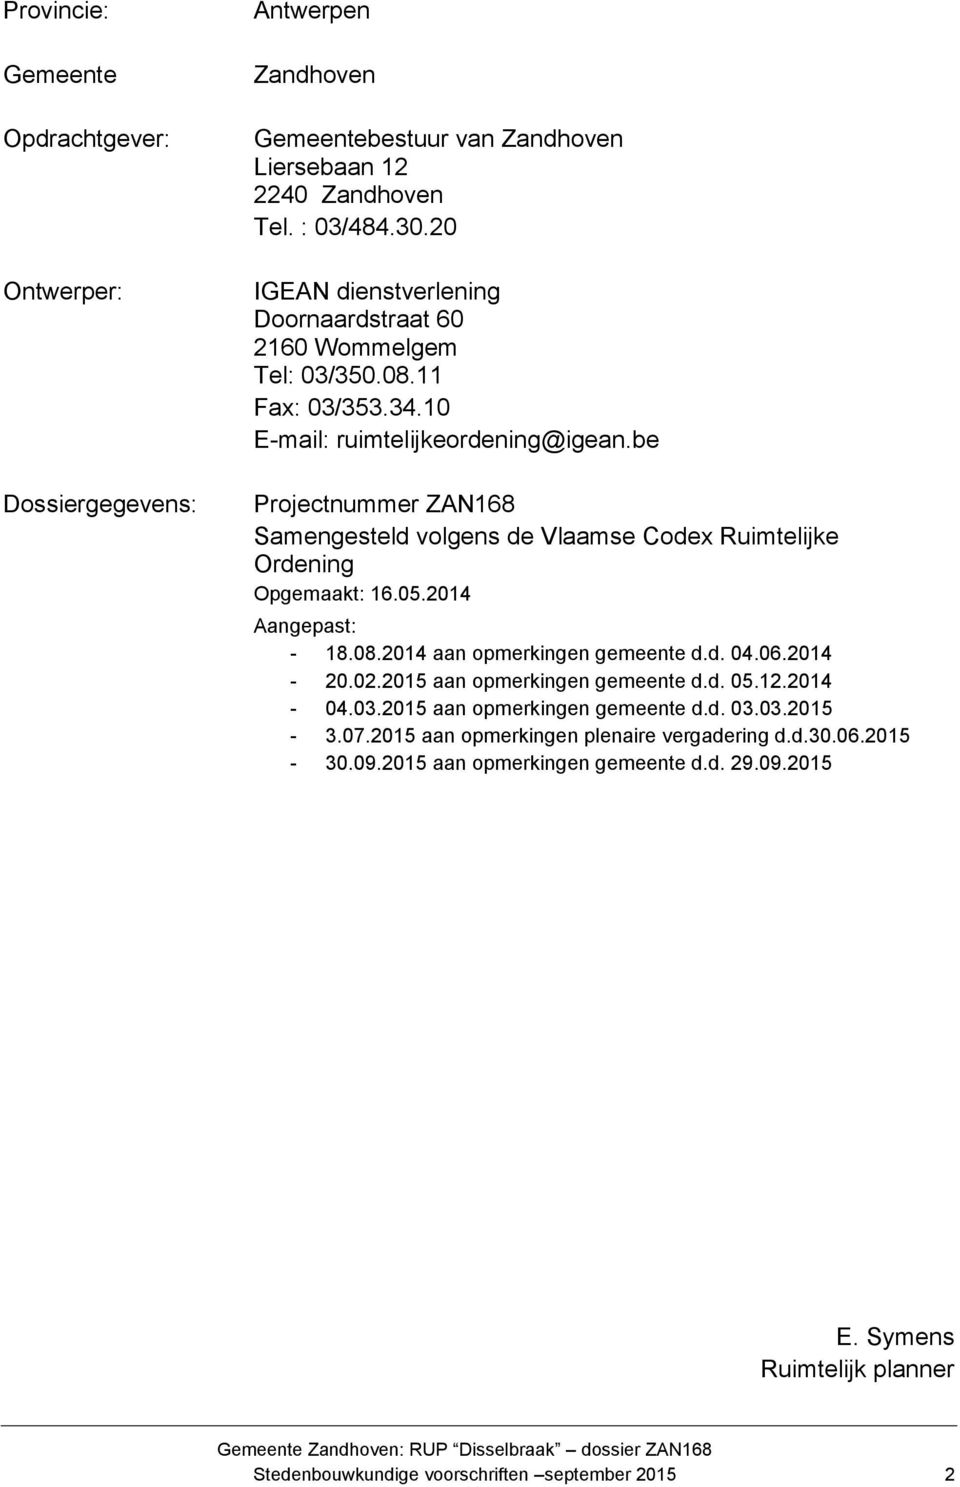 be Projectnummer ZAN168 Samengesteld volgens de Vlaamse Codex Ruimtelijke Ordening Opgemaakt: 16.05.2014 Aangepast: - 18.08.2014 aan opmerkingen gemeente d.d. 04.06.2014-20.02.